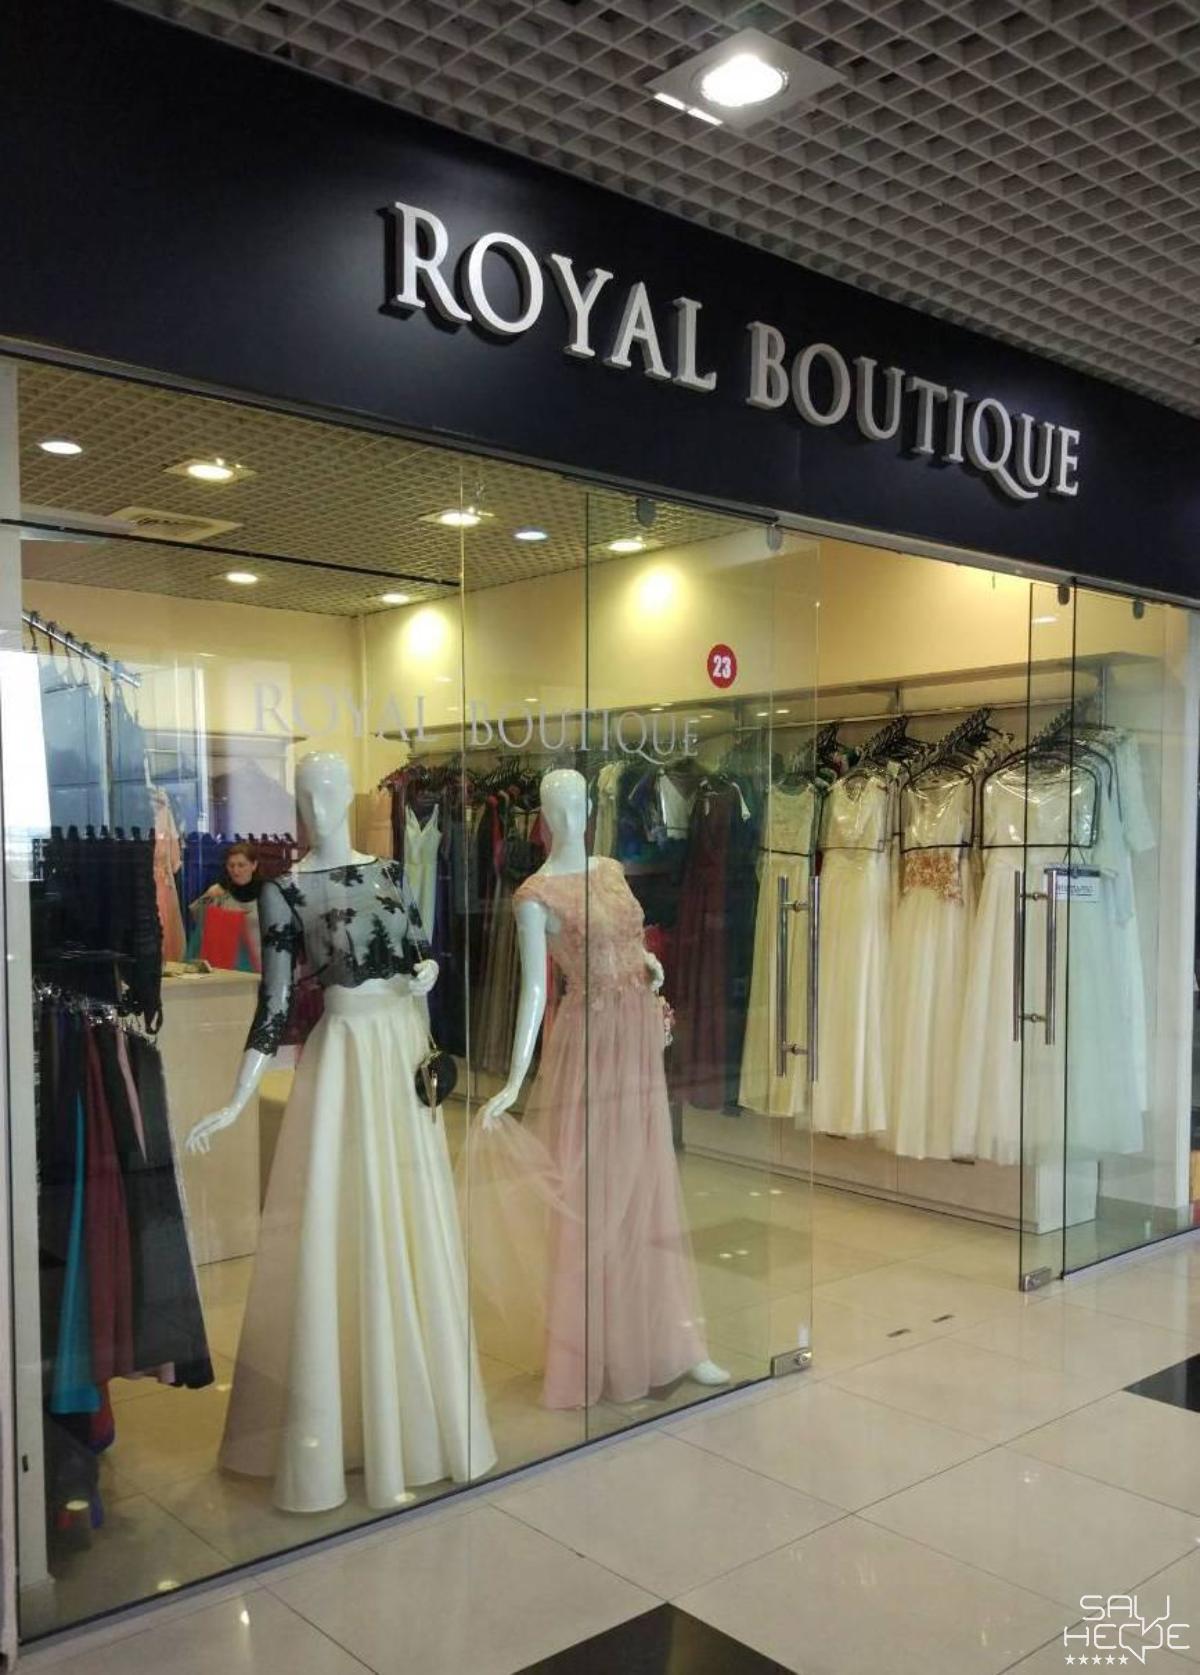 Royal boutique